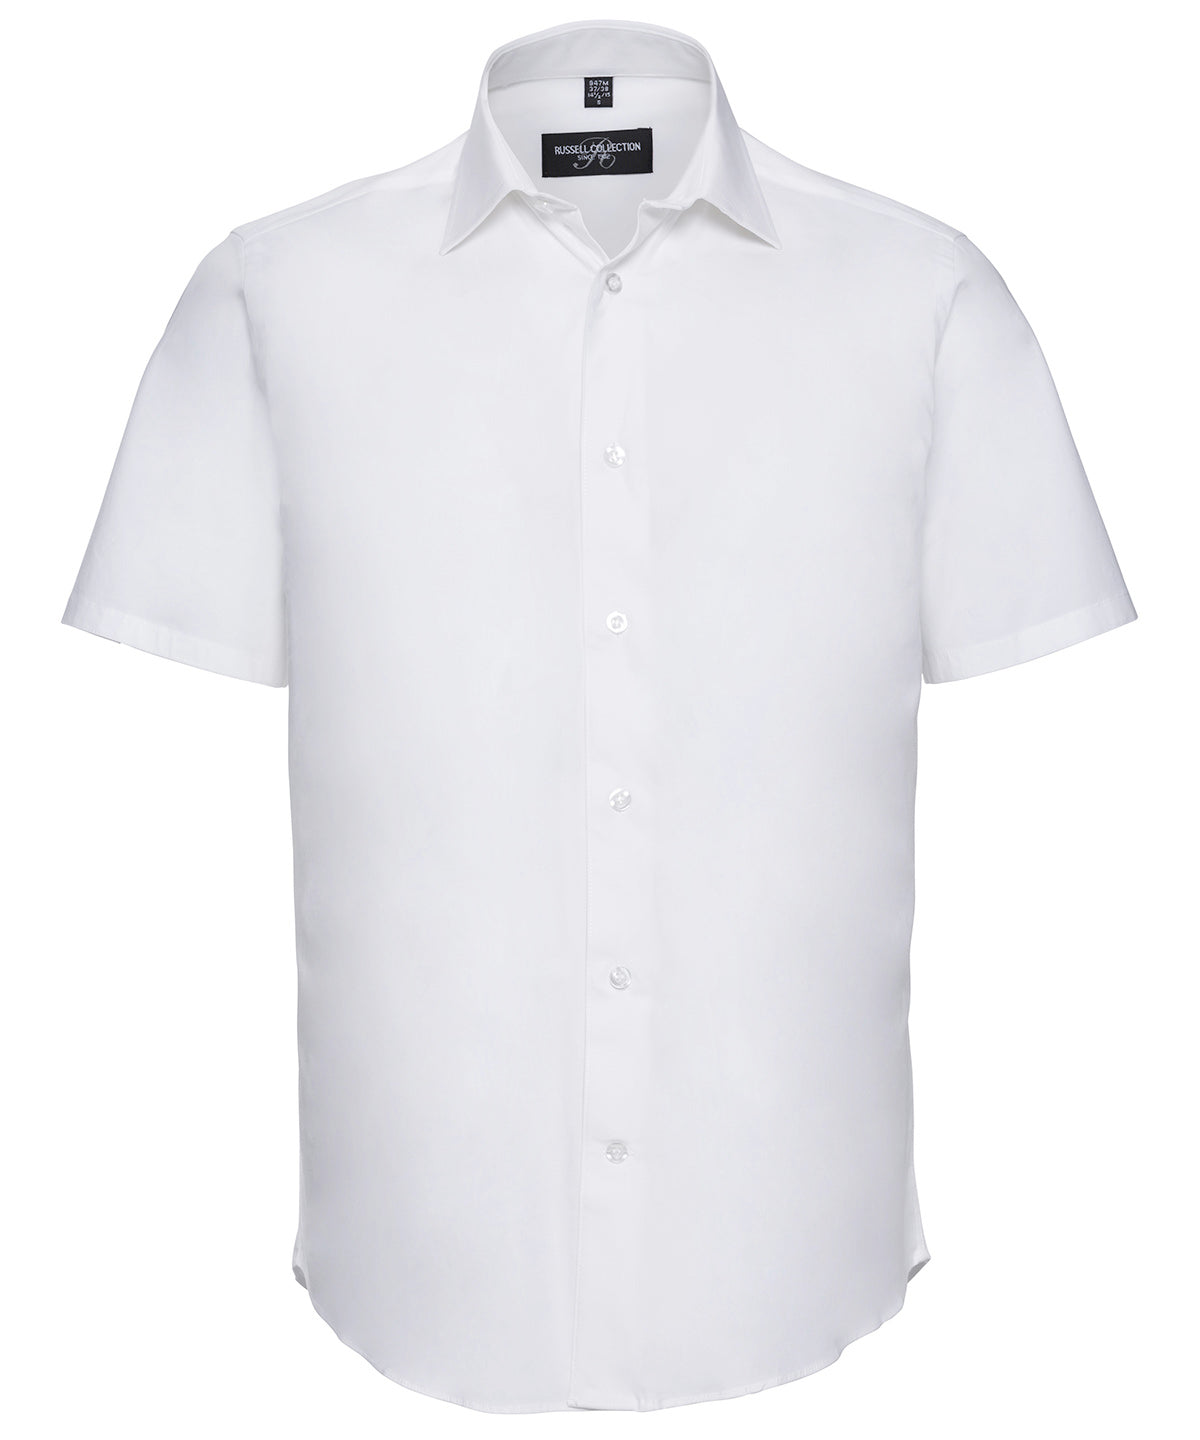 Bolir - Short Sleeve Easycare Fitted Shirt